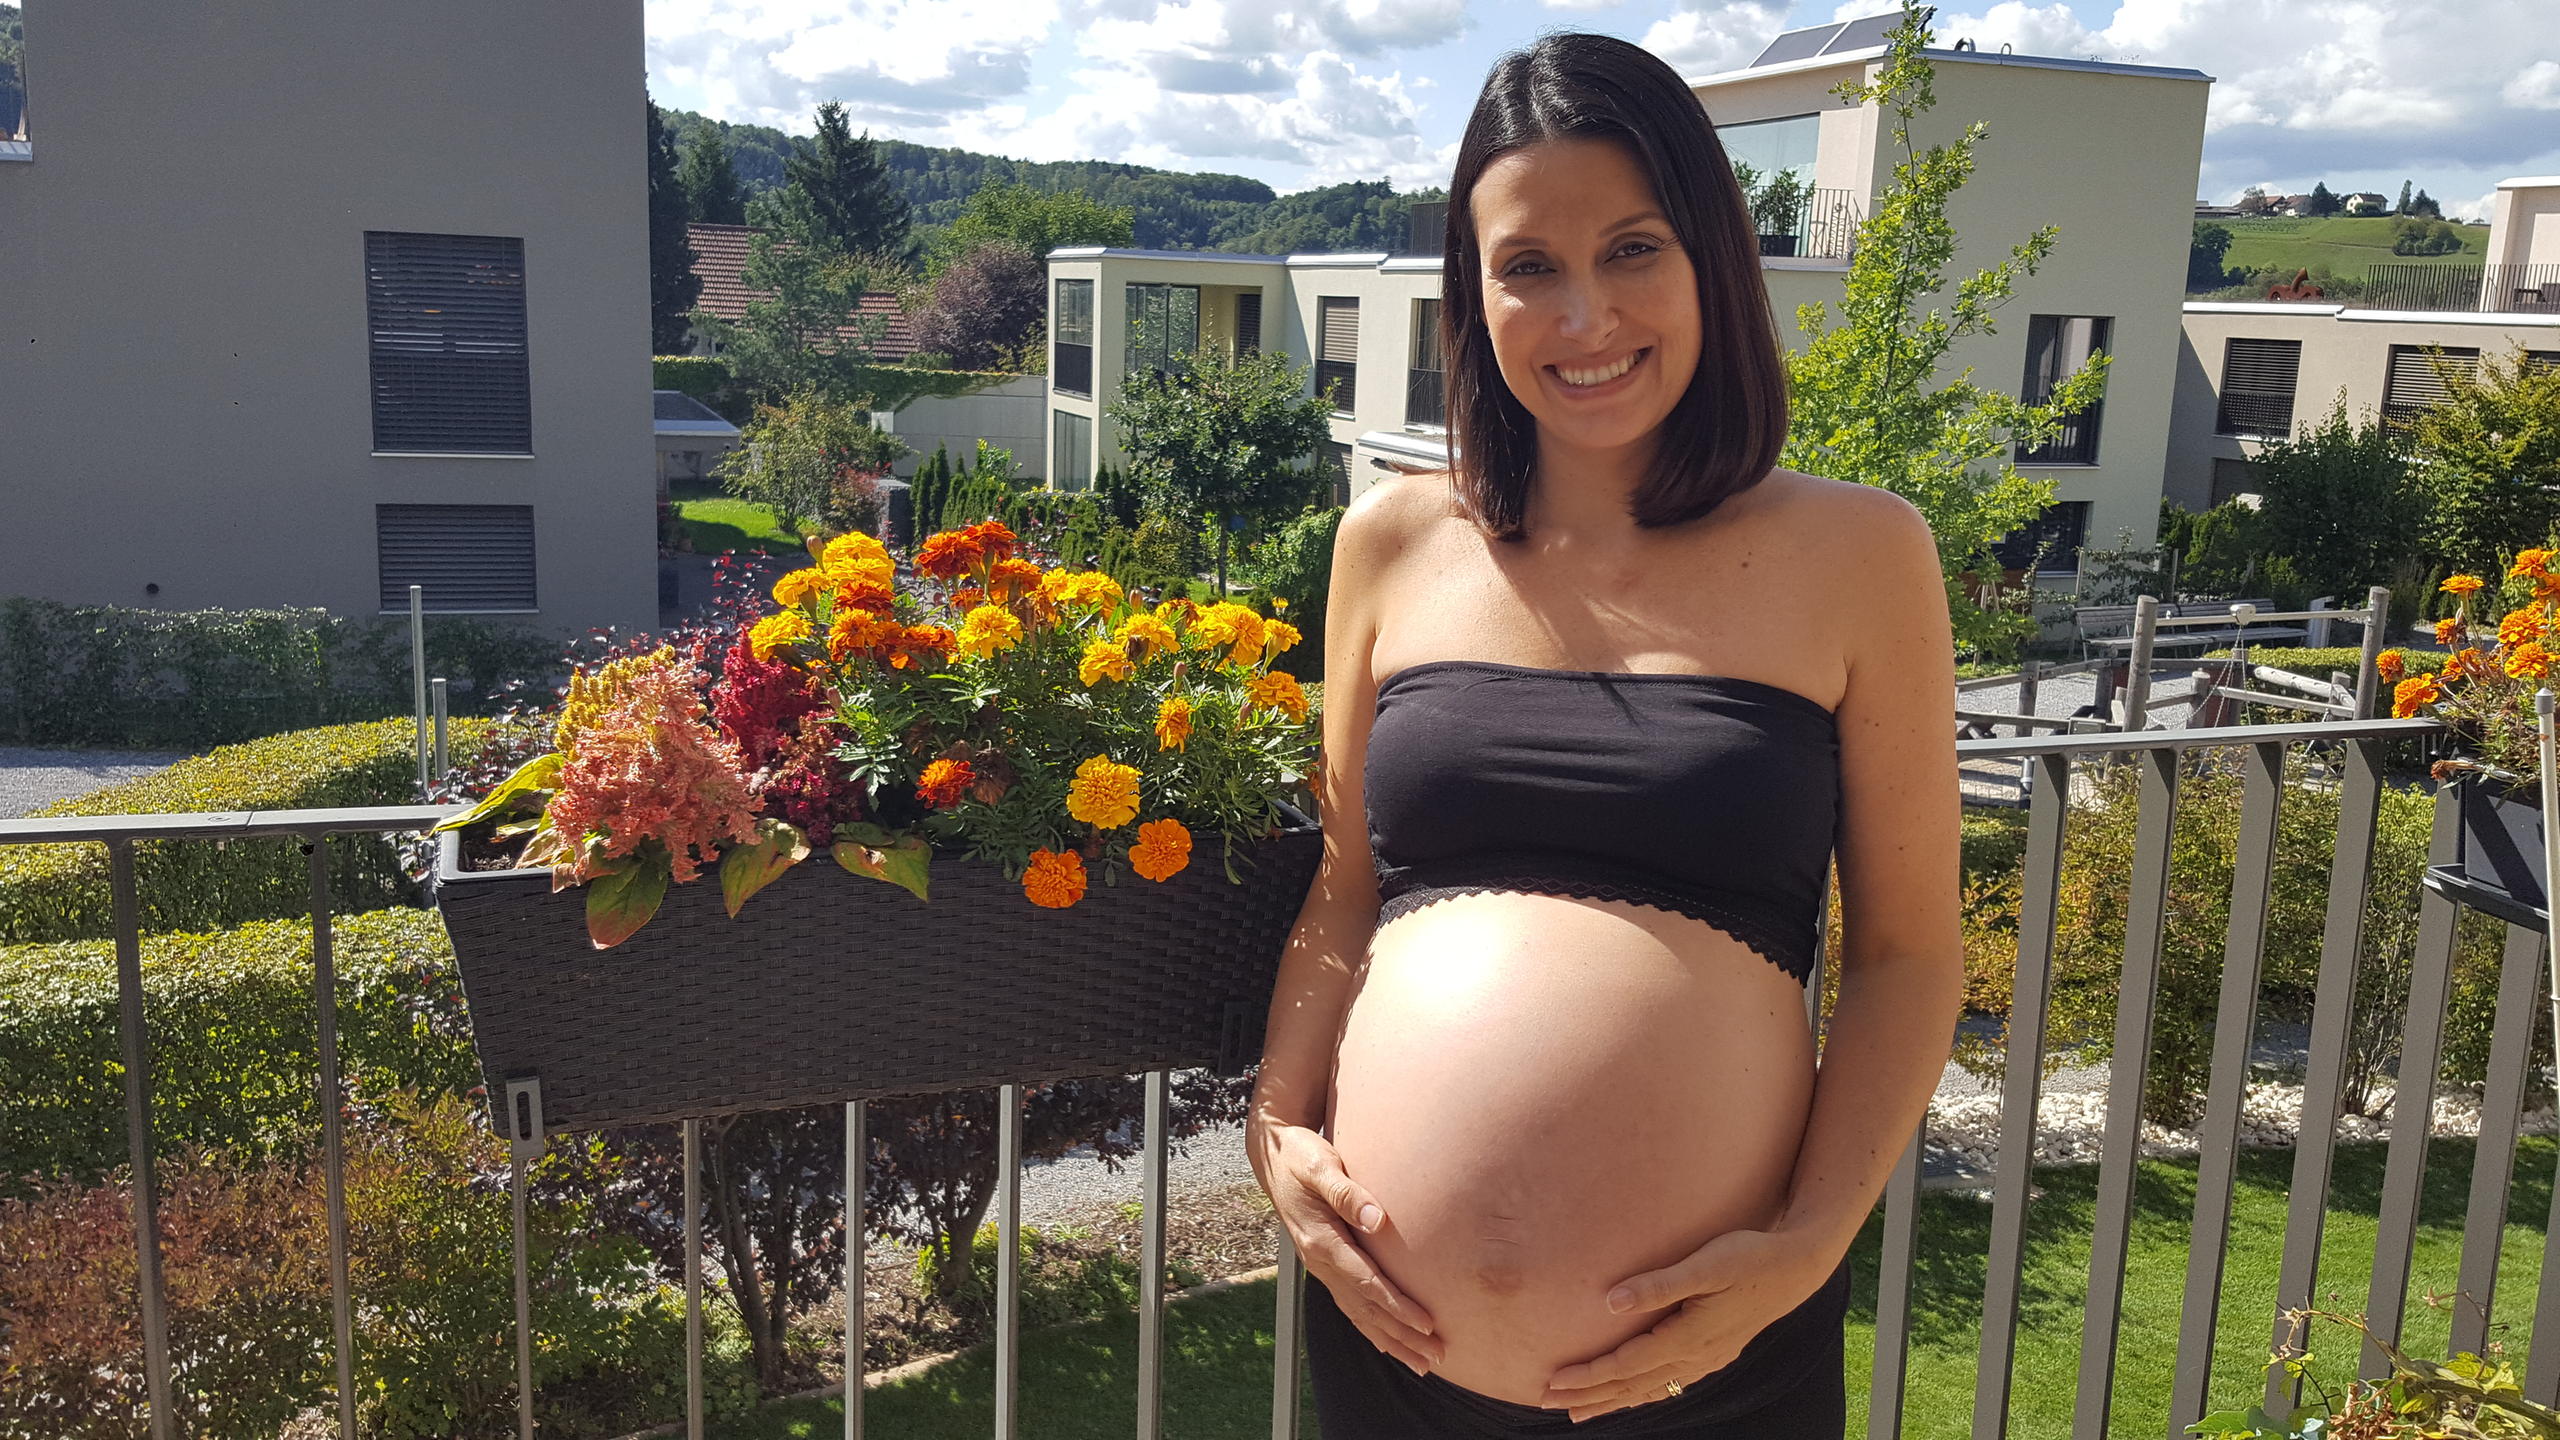 Uma mulher grávida na varanda de um prédio moderno